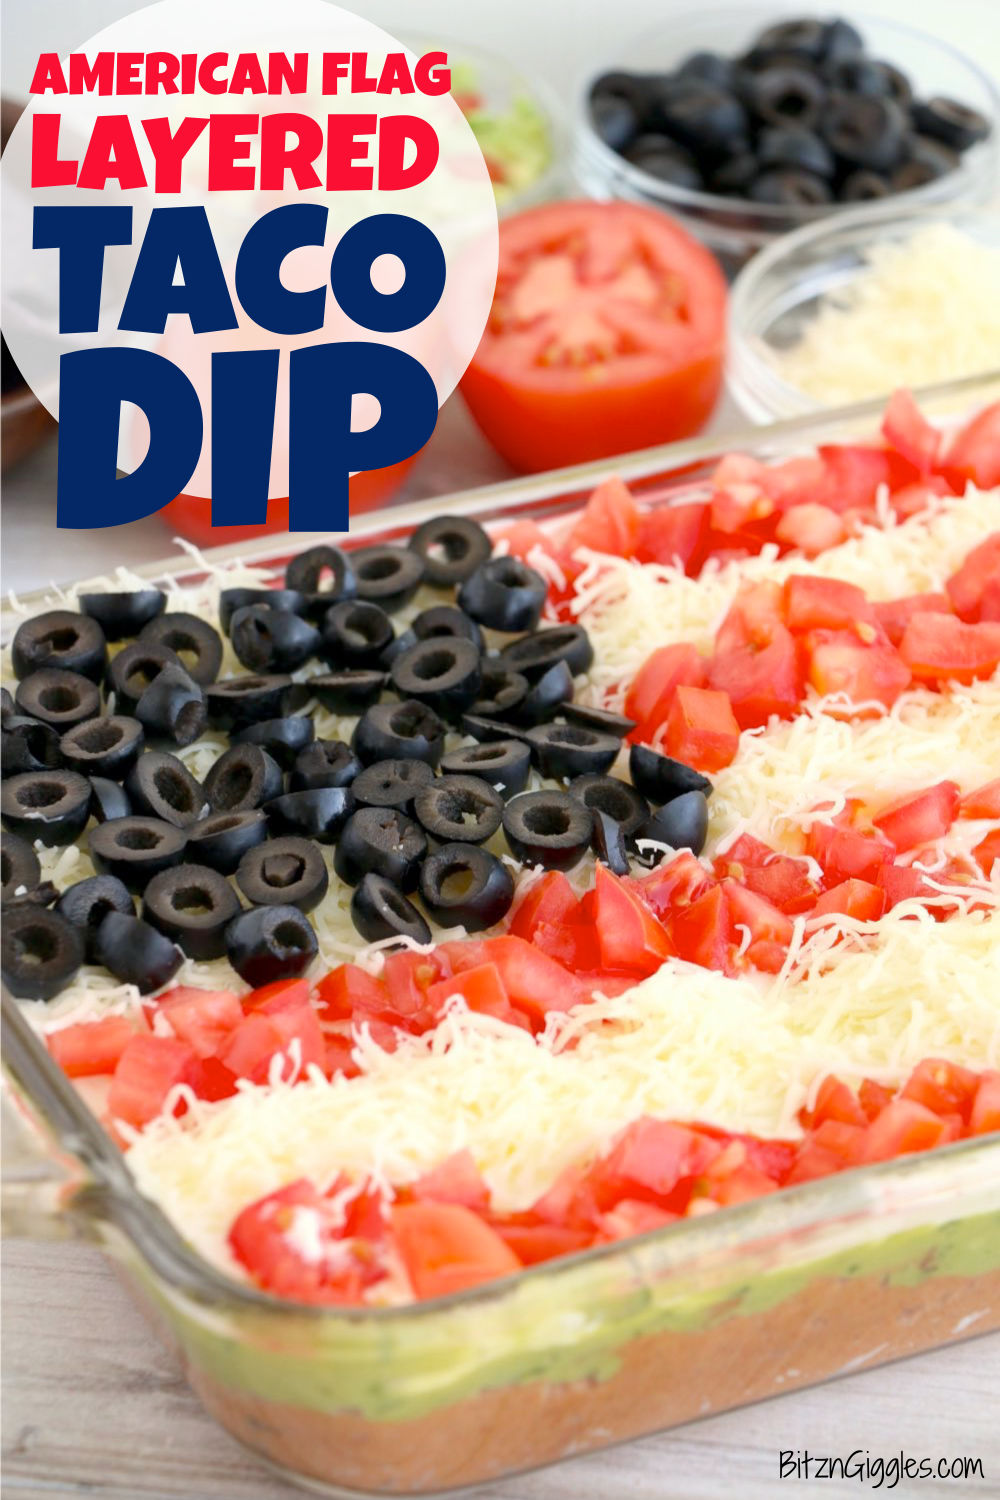 Món ăn American flag taco dip được thiết kế với những nguyên liệu có màu sắc đại diện cho cờ Mỹ, đánh dấu một trong những lễ kỷ niệm quan trọng của nước Mỹ. Hãy xem hình ảnh để cảm nhận được sự tinh tế và ý nghĩa của món ăn này.